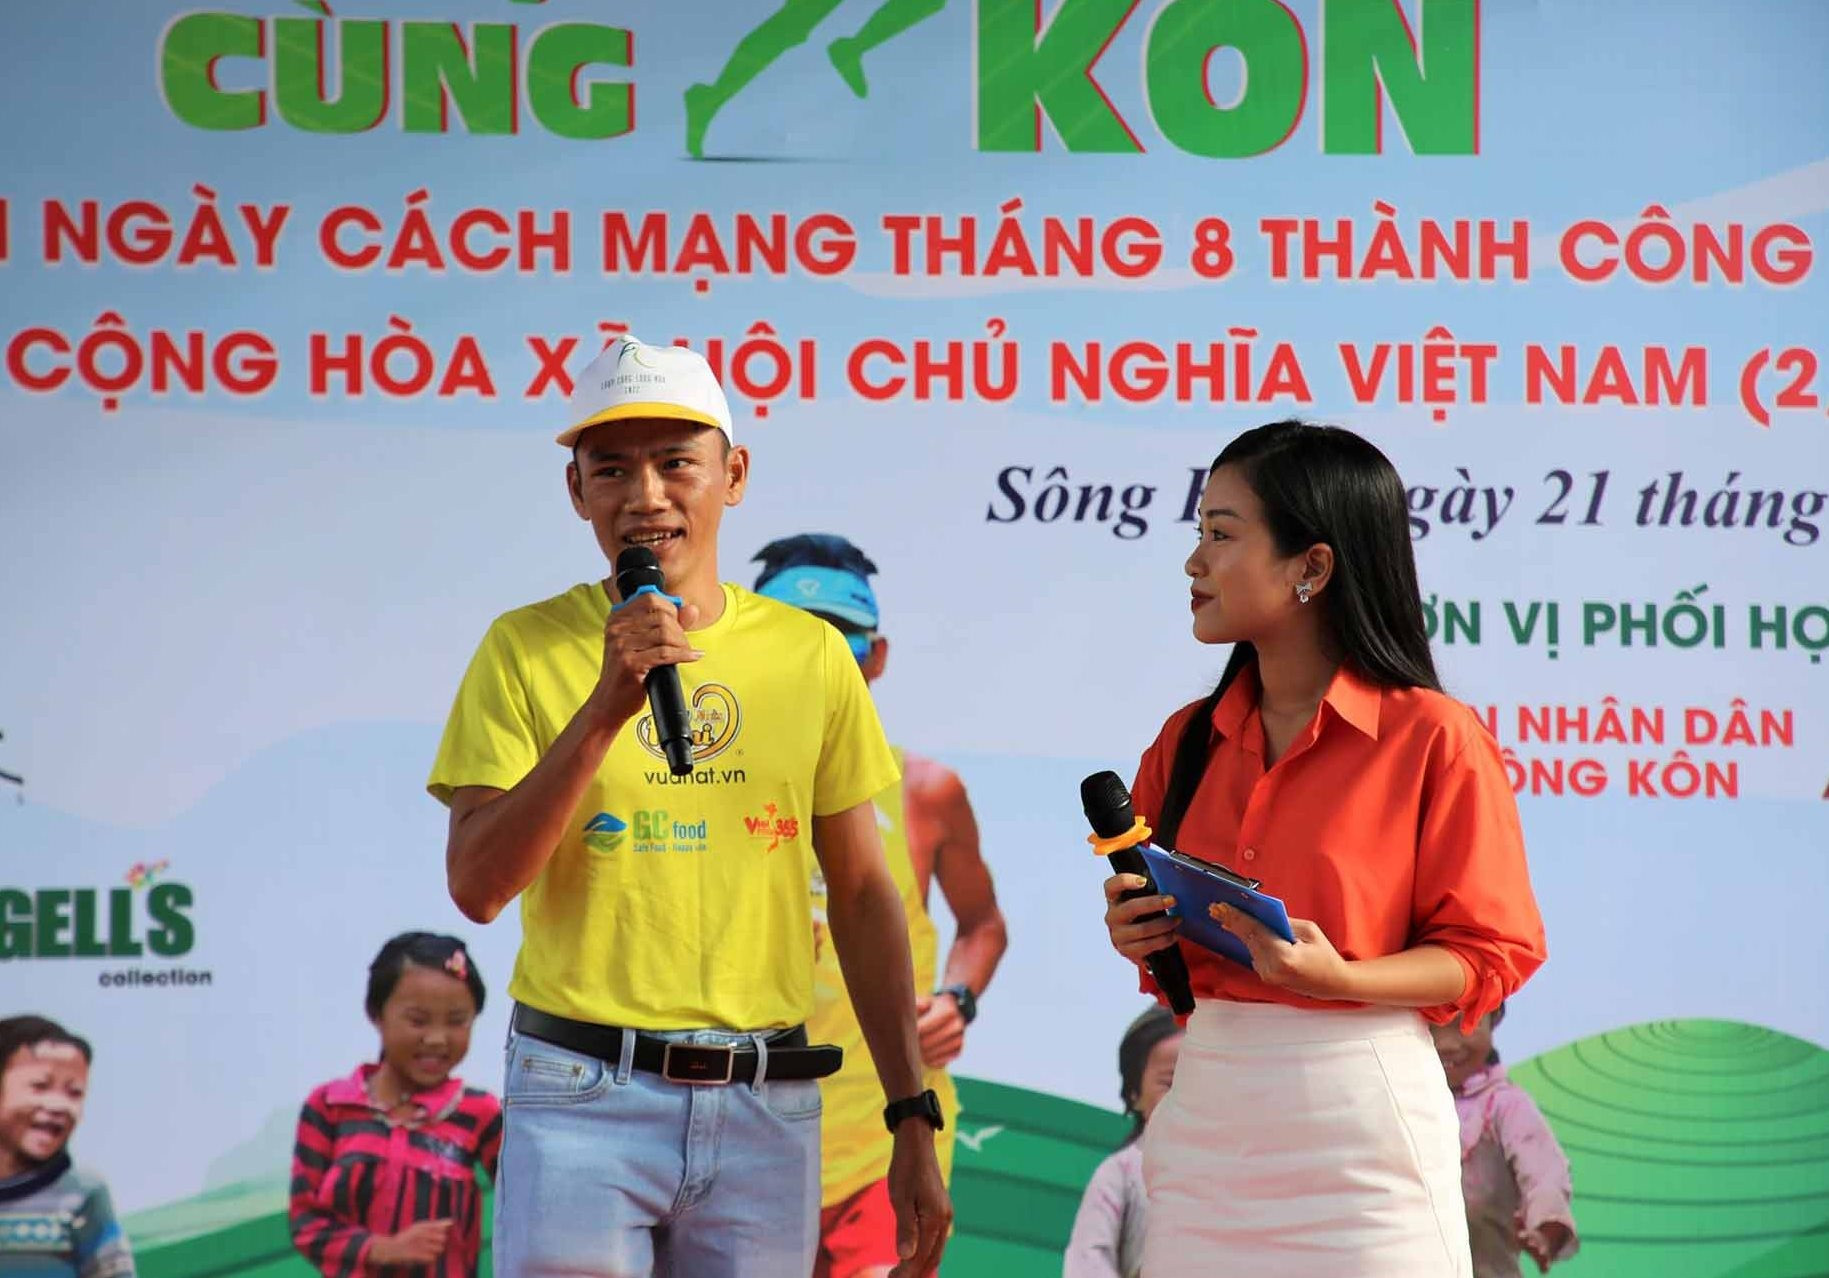 Vận động viên marathon Nguyễn Văn Long, người được mệnh danh “không phổi” tham gia làm đại sức giải “Chạy bộ cùng Sông Kôn“. Ảnh: A.N